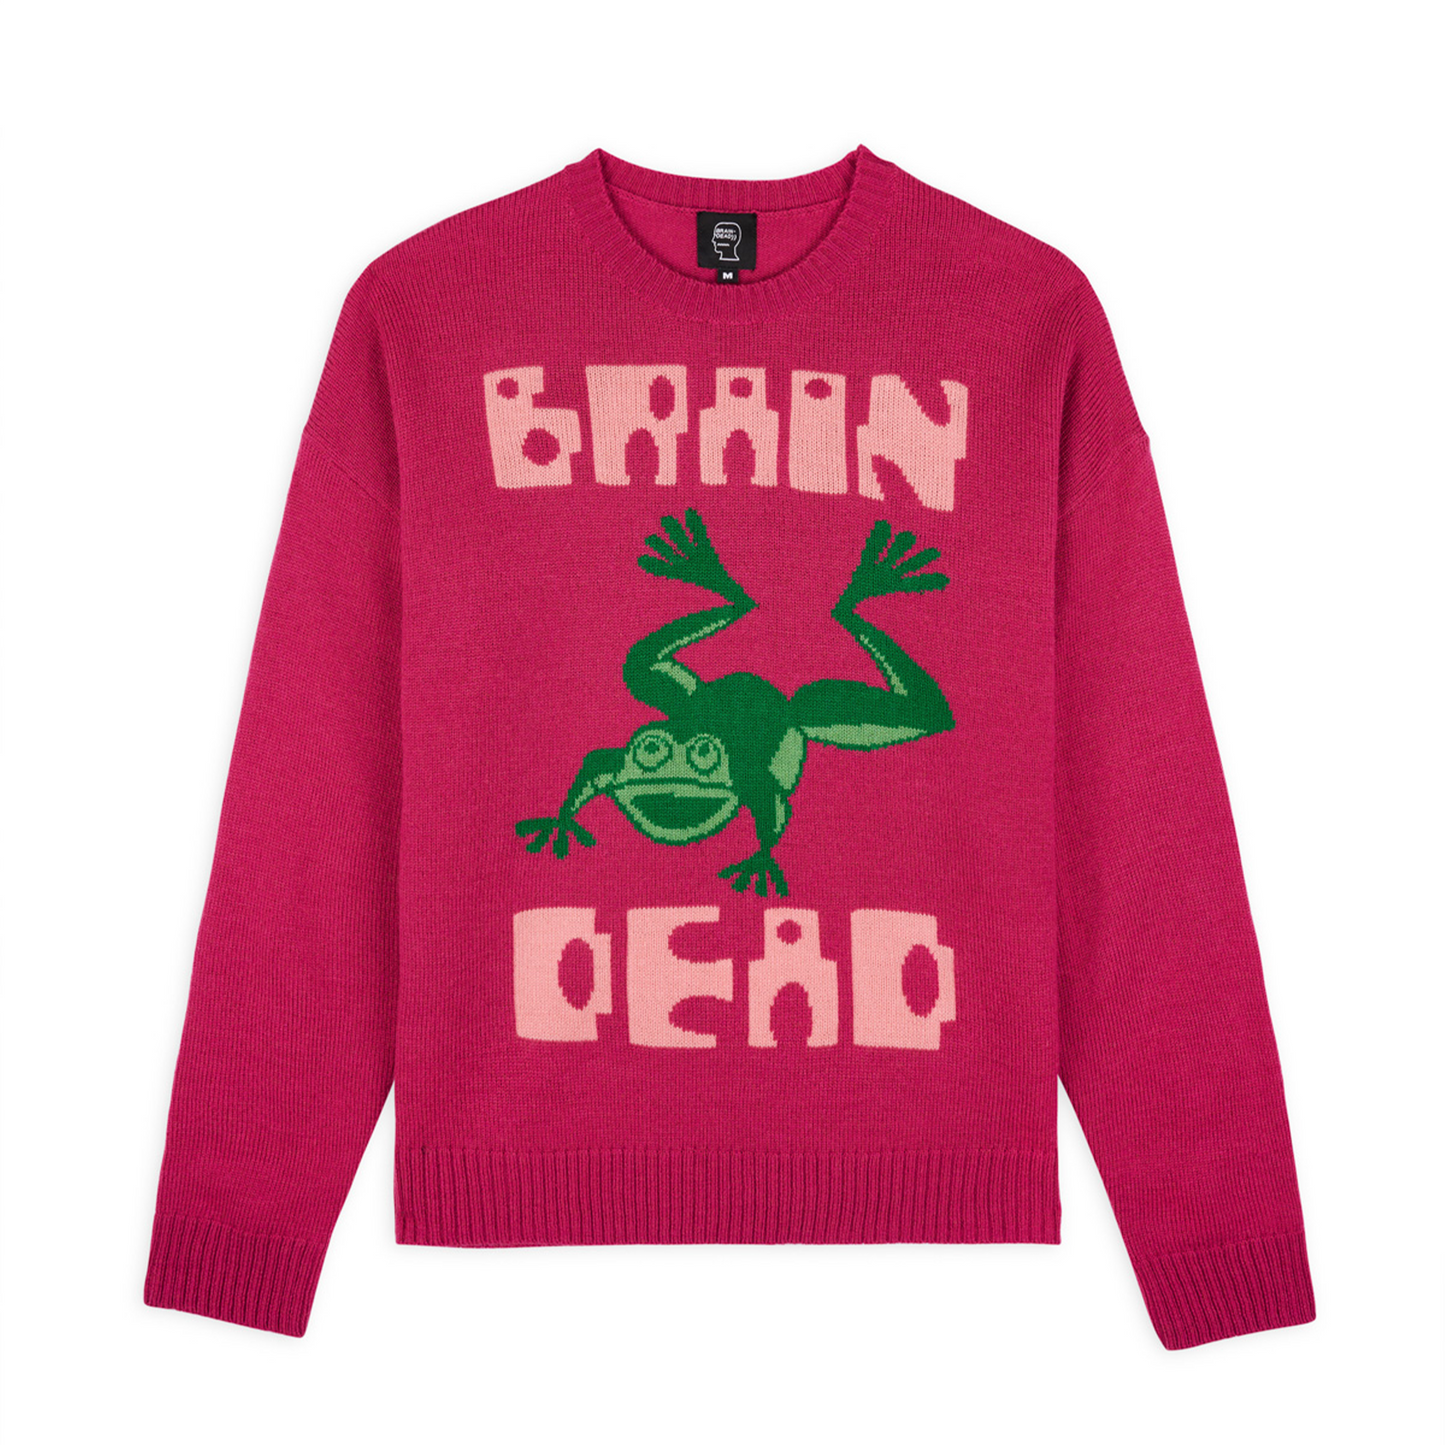 Brain Dead Frogger Sweater